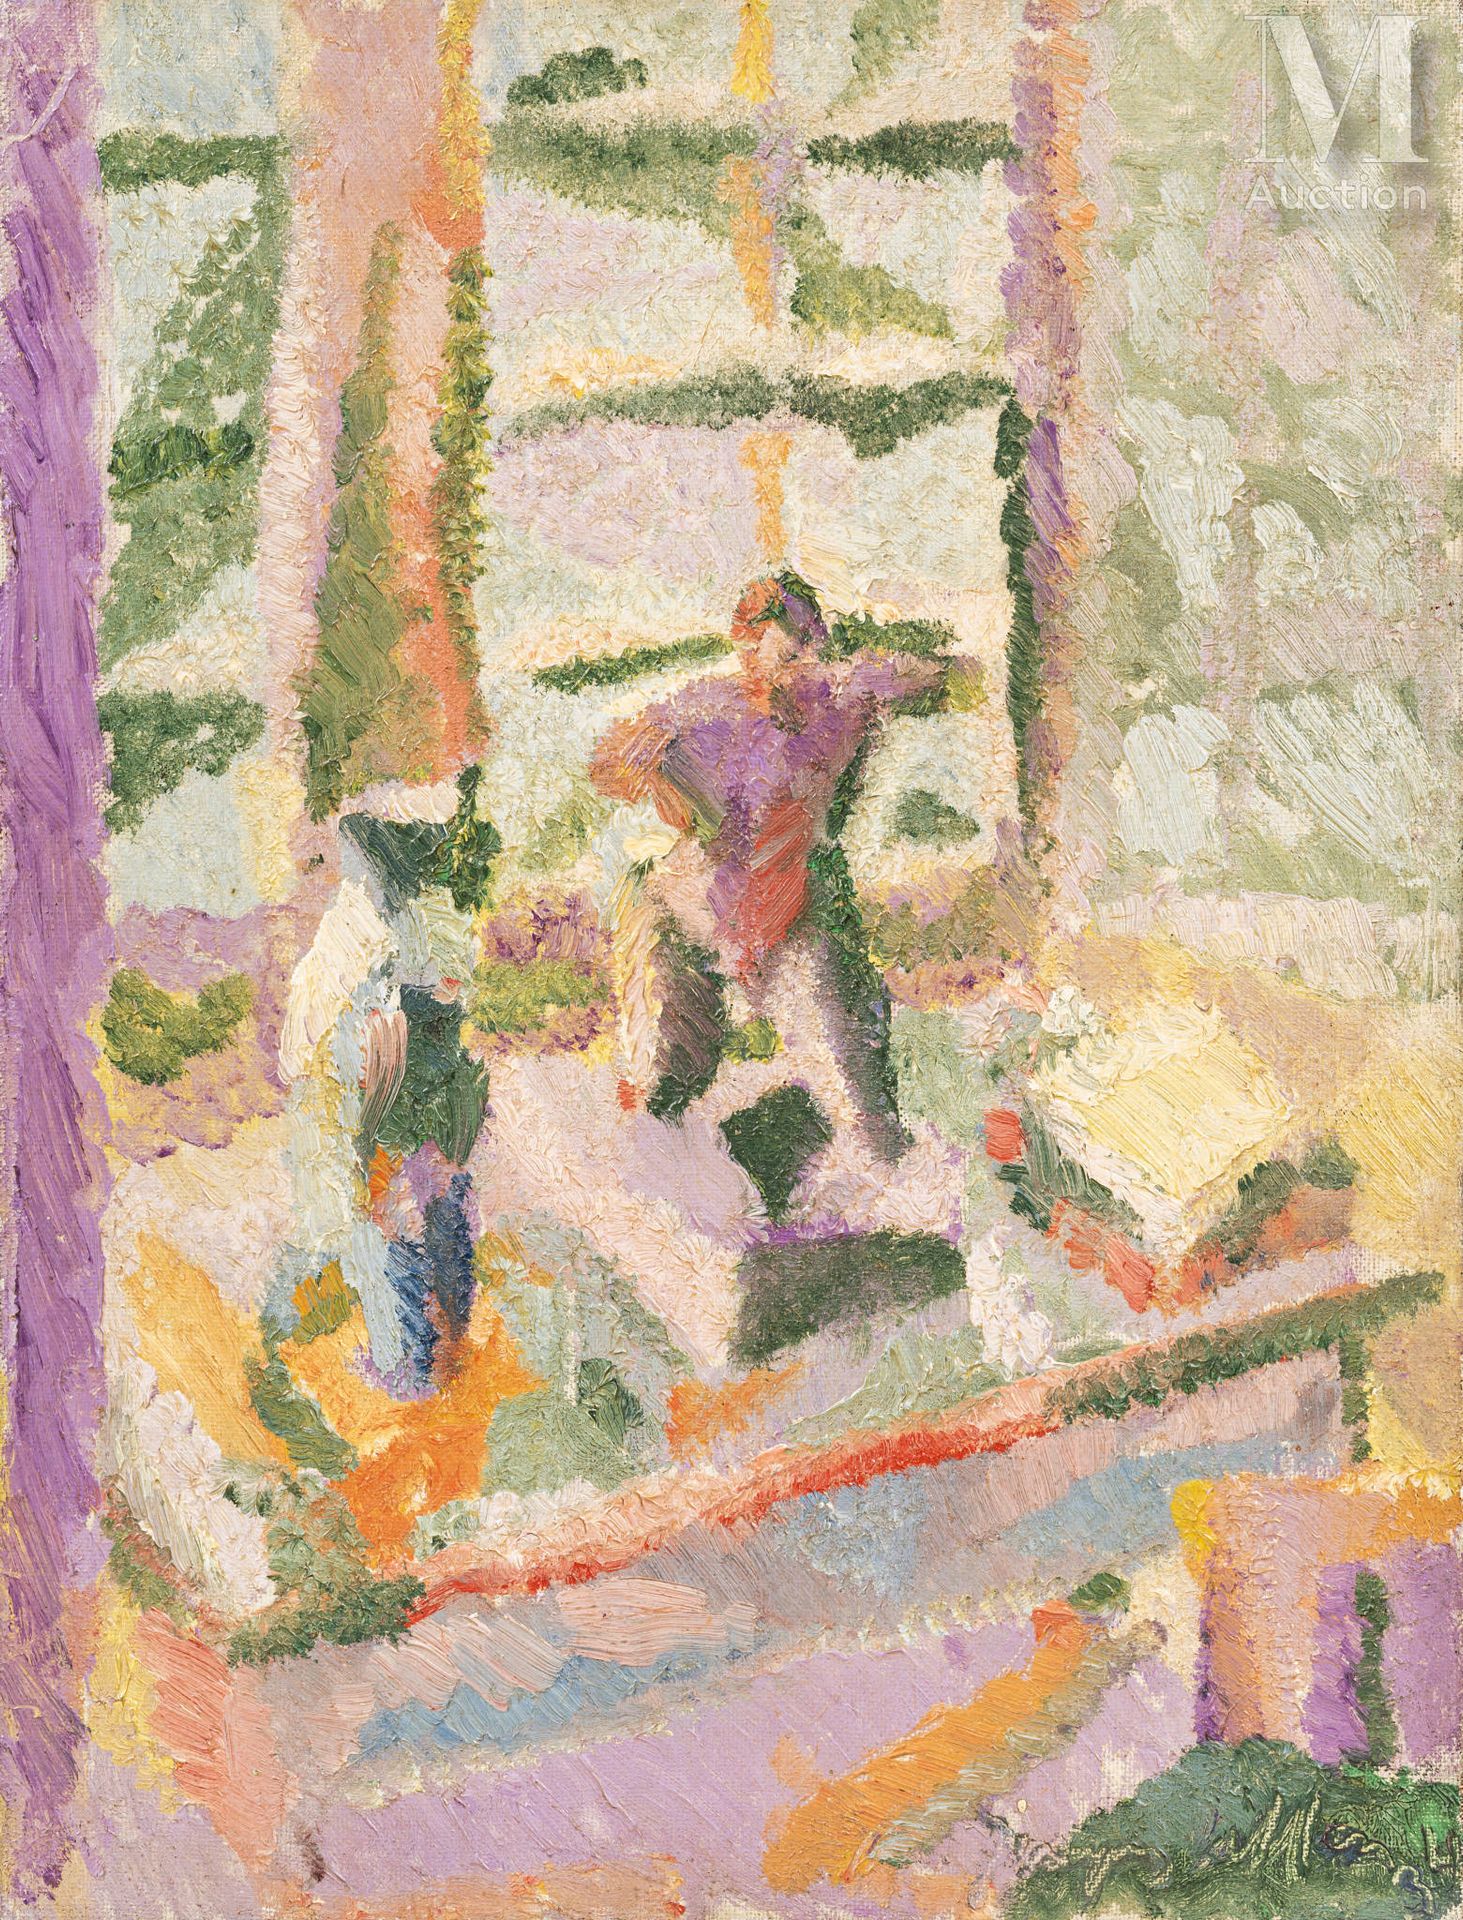 Jacques VILLON (Damville 1875 - Puteaux 1963) 小沙龙的海湾》，1934年



镶嵌在画板上的油彩

35x26,&hellip;